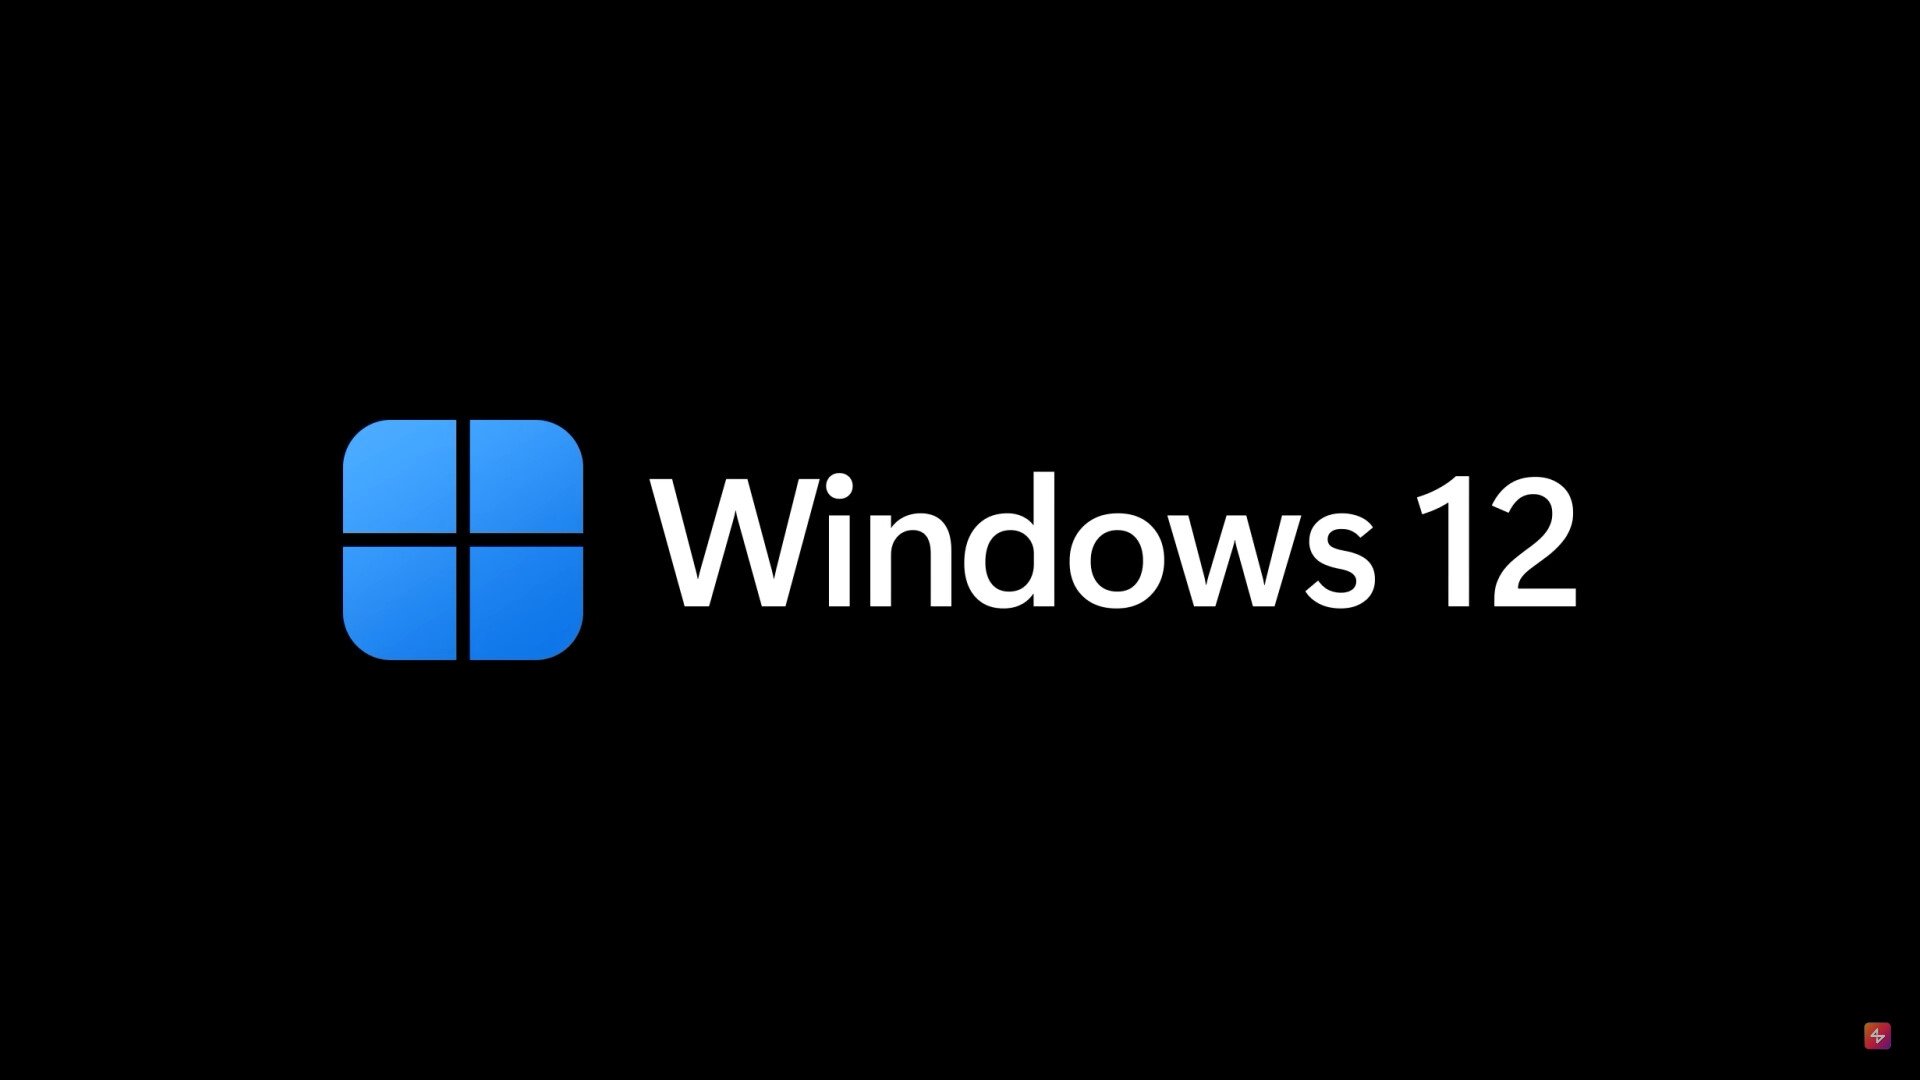 Conceito revela design do “Windows 12”